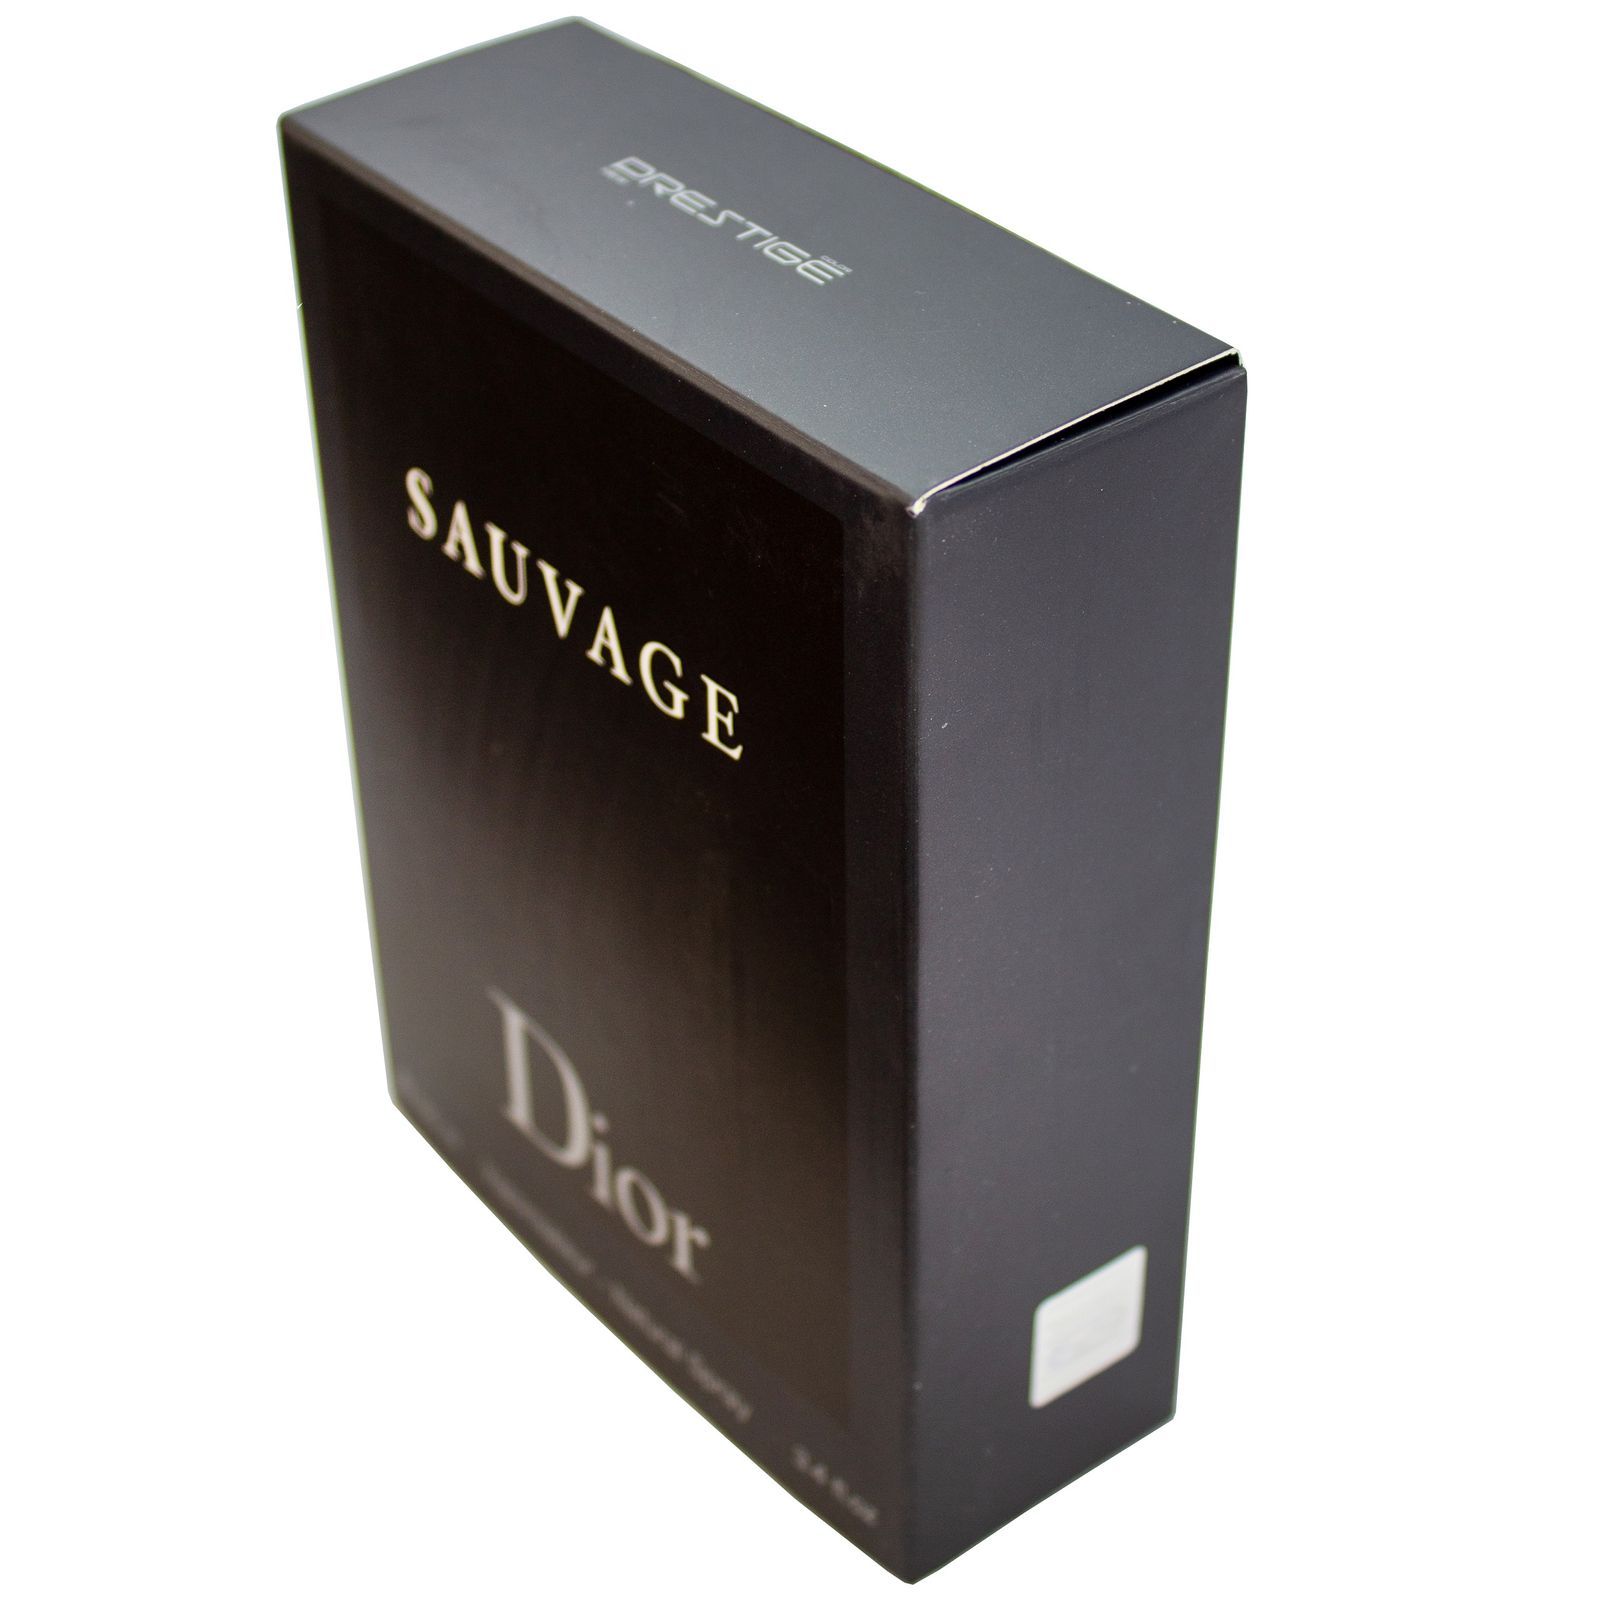 ادو تویلت مردانه پرستیژ مدل Sauvage Dior حجم 100 میلی لیتر -  - 2